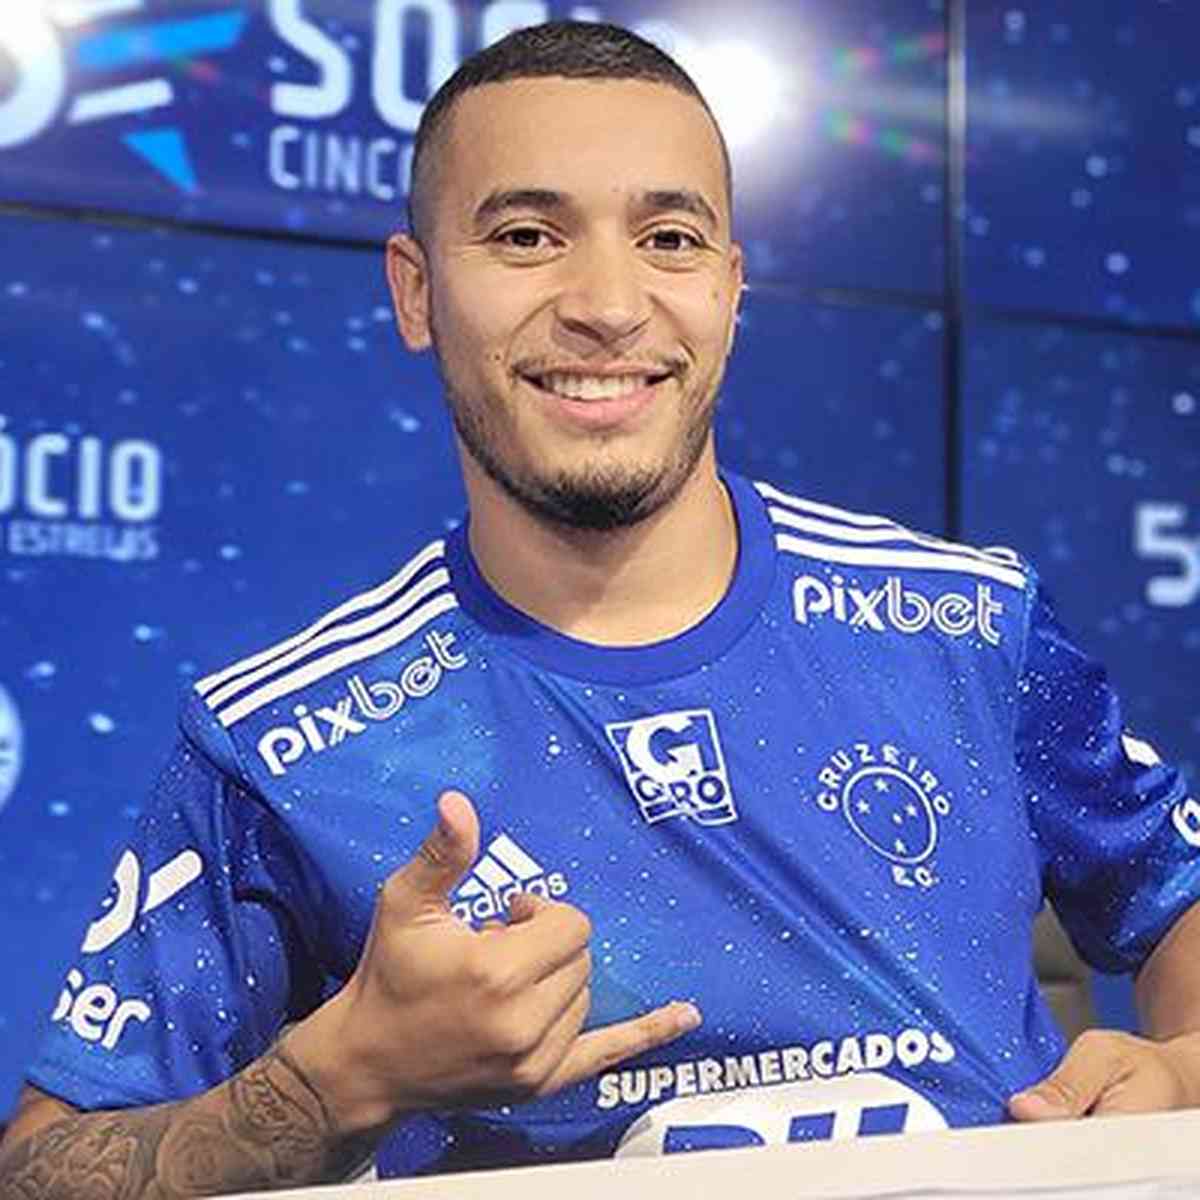 Wesley Gasolina reforçará o Cruzeiro